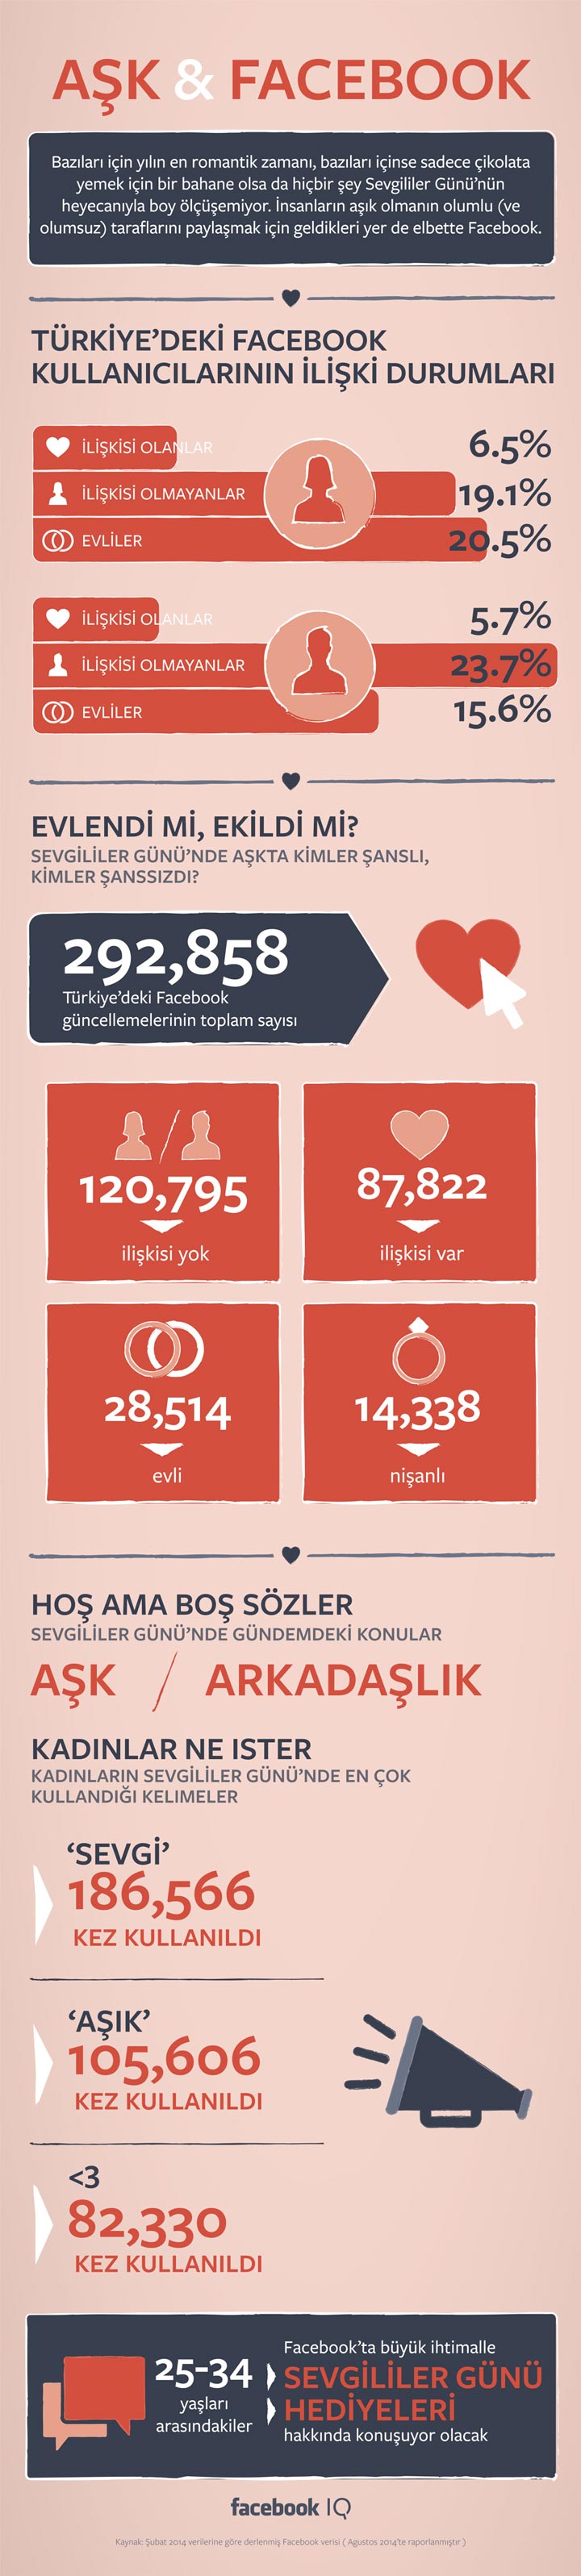 Facebook Türkiye ilişki durumu infografik